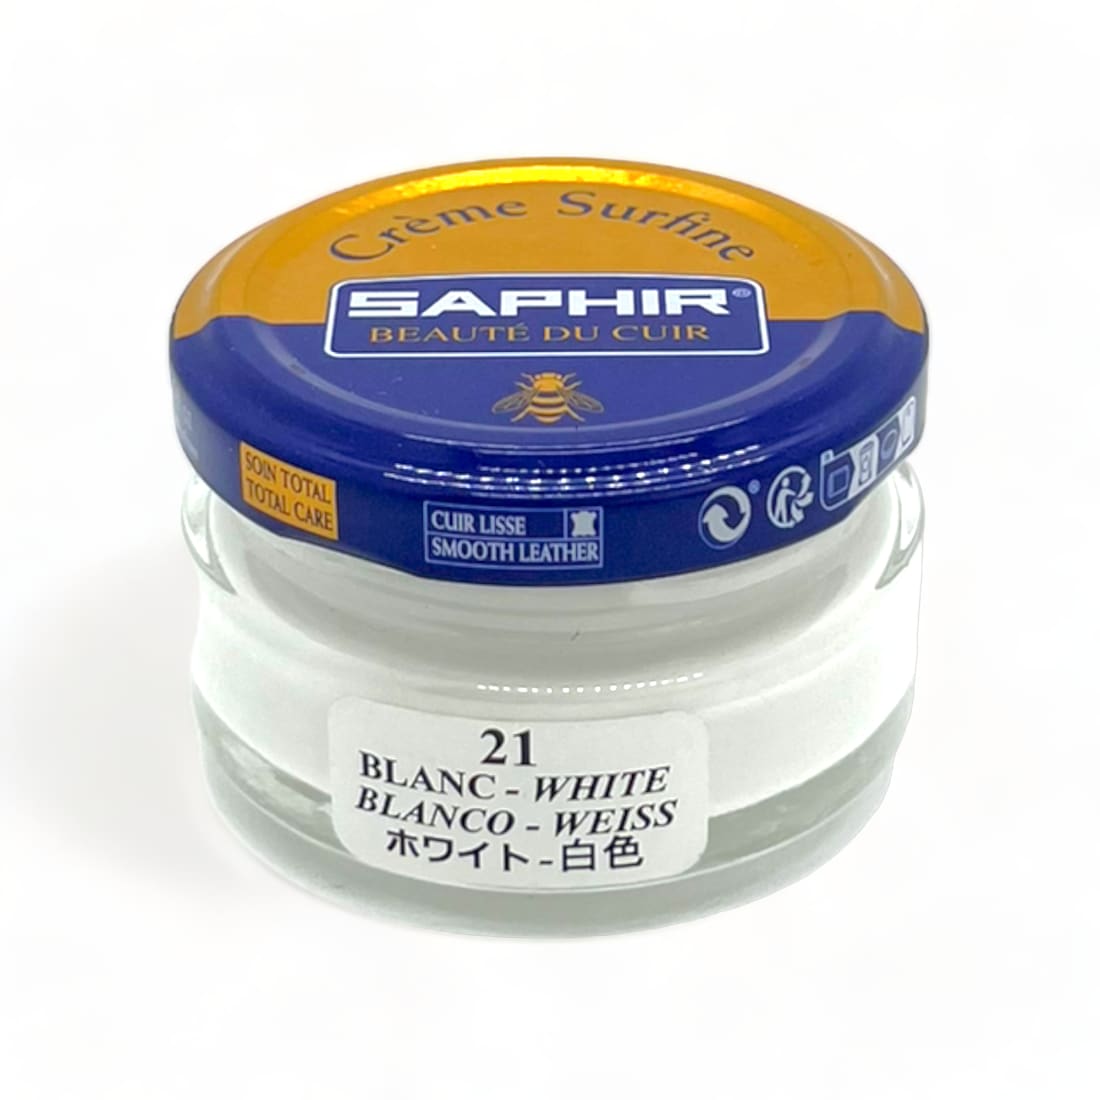 Cirage Crème Surfine Blanc - Saphir - 50 ml - Accessoires